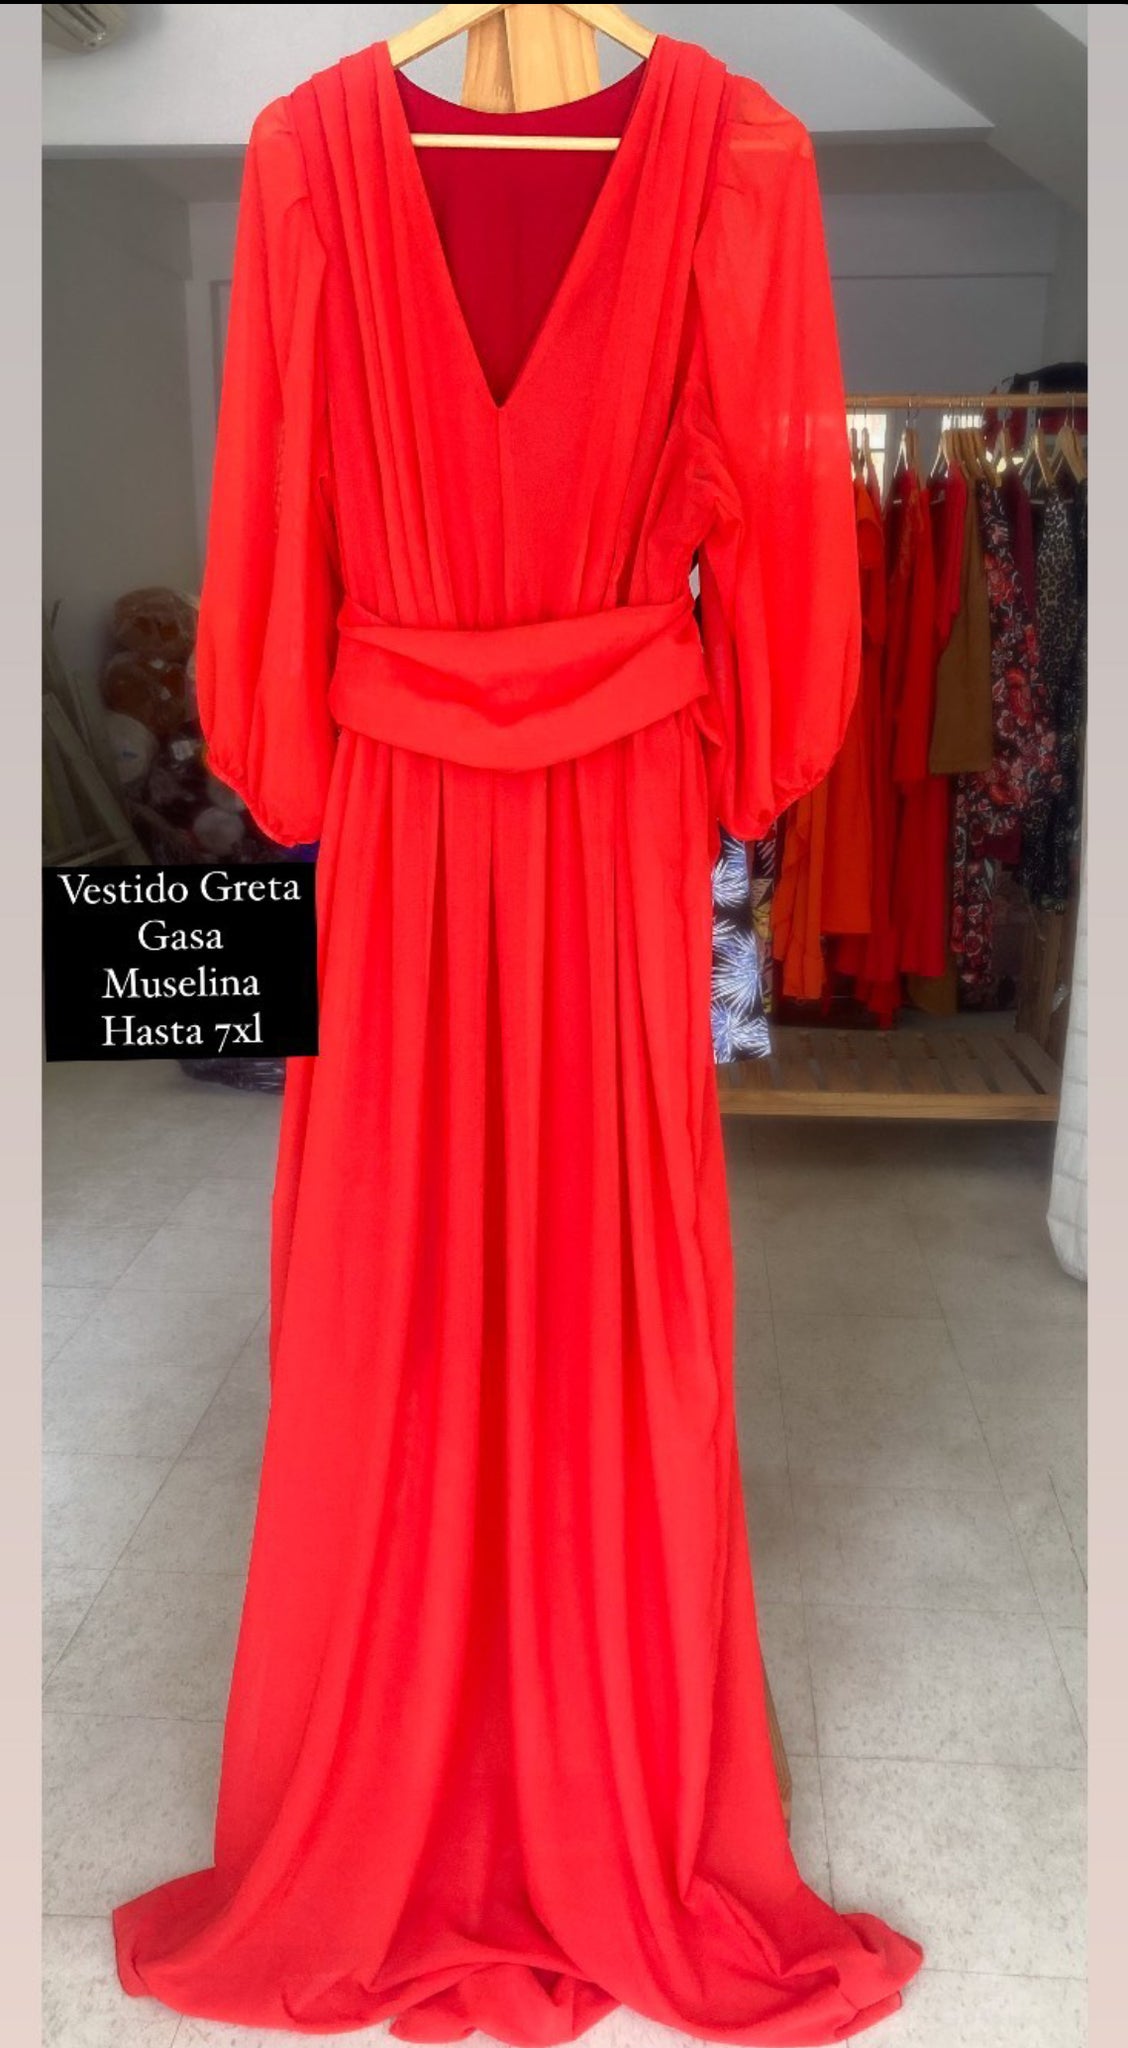 Vestido Greta gasa muselina drapeado rojo fs